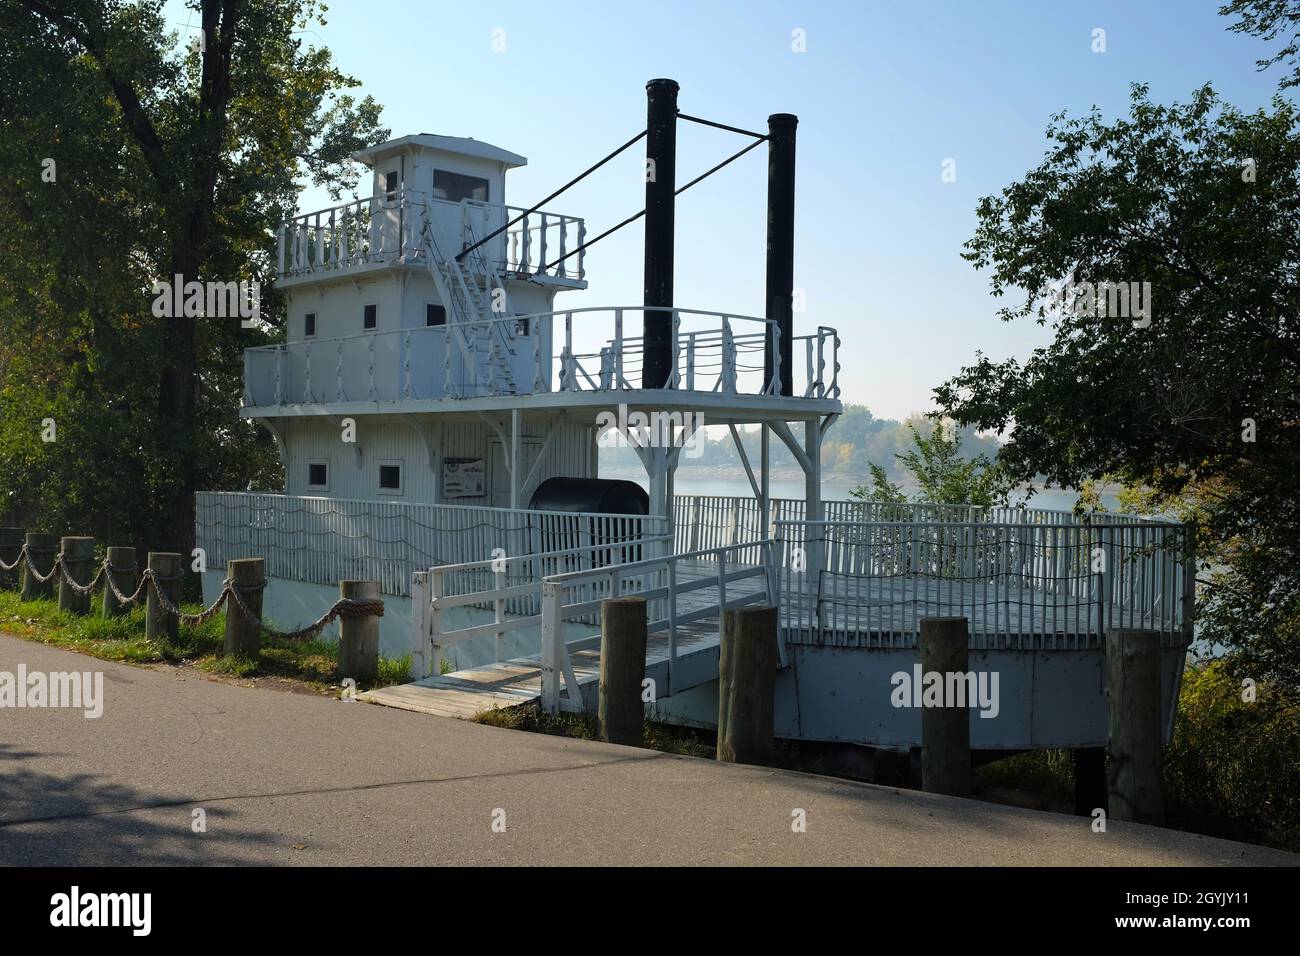 BISMARCK, NORTH DAKOTA - 3 Okt 2021: Der Steamboat Park entlang des Missouri River bietet Wanderwege und ein nachahmes Steamboat . Stockfoto